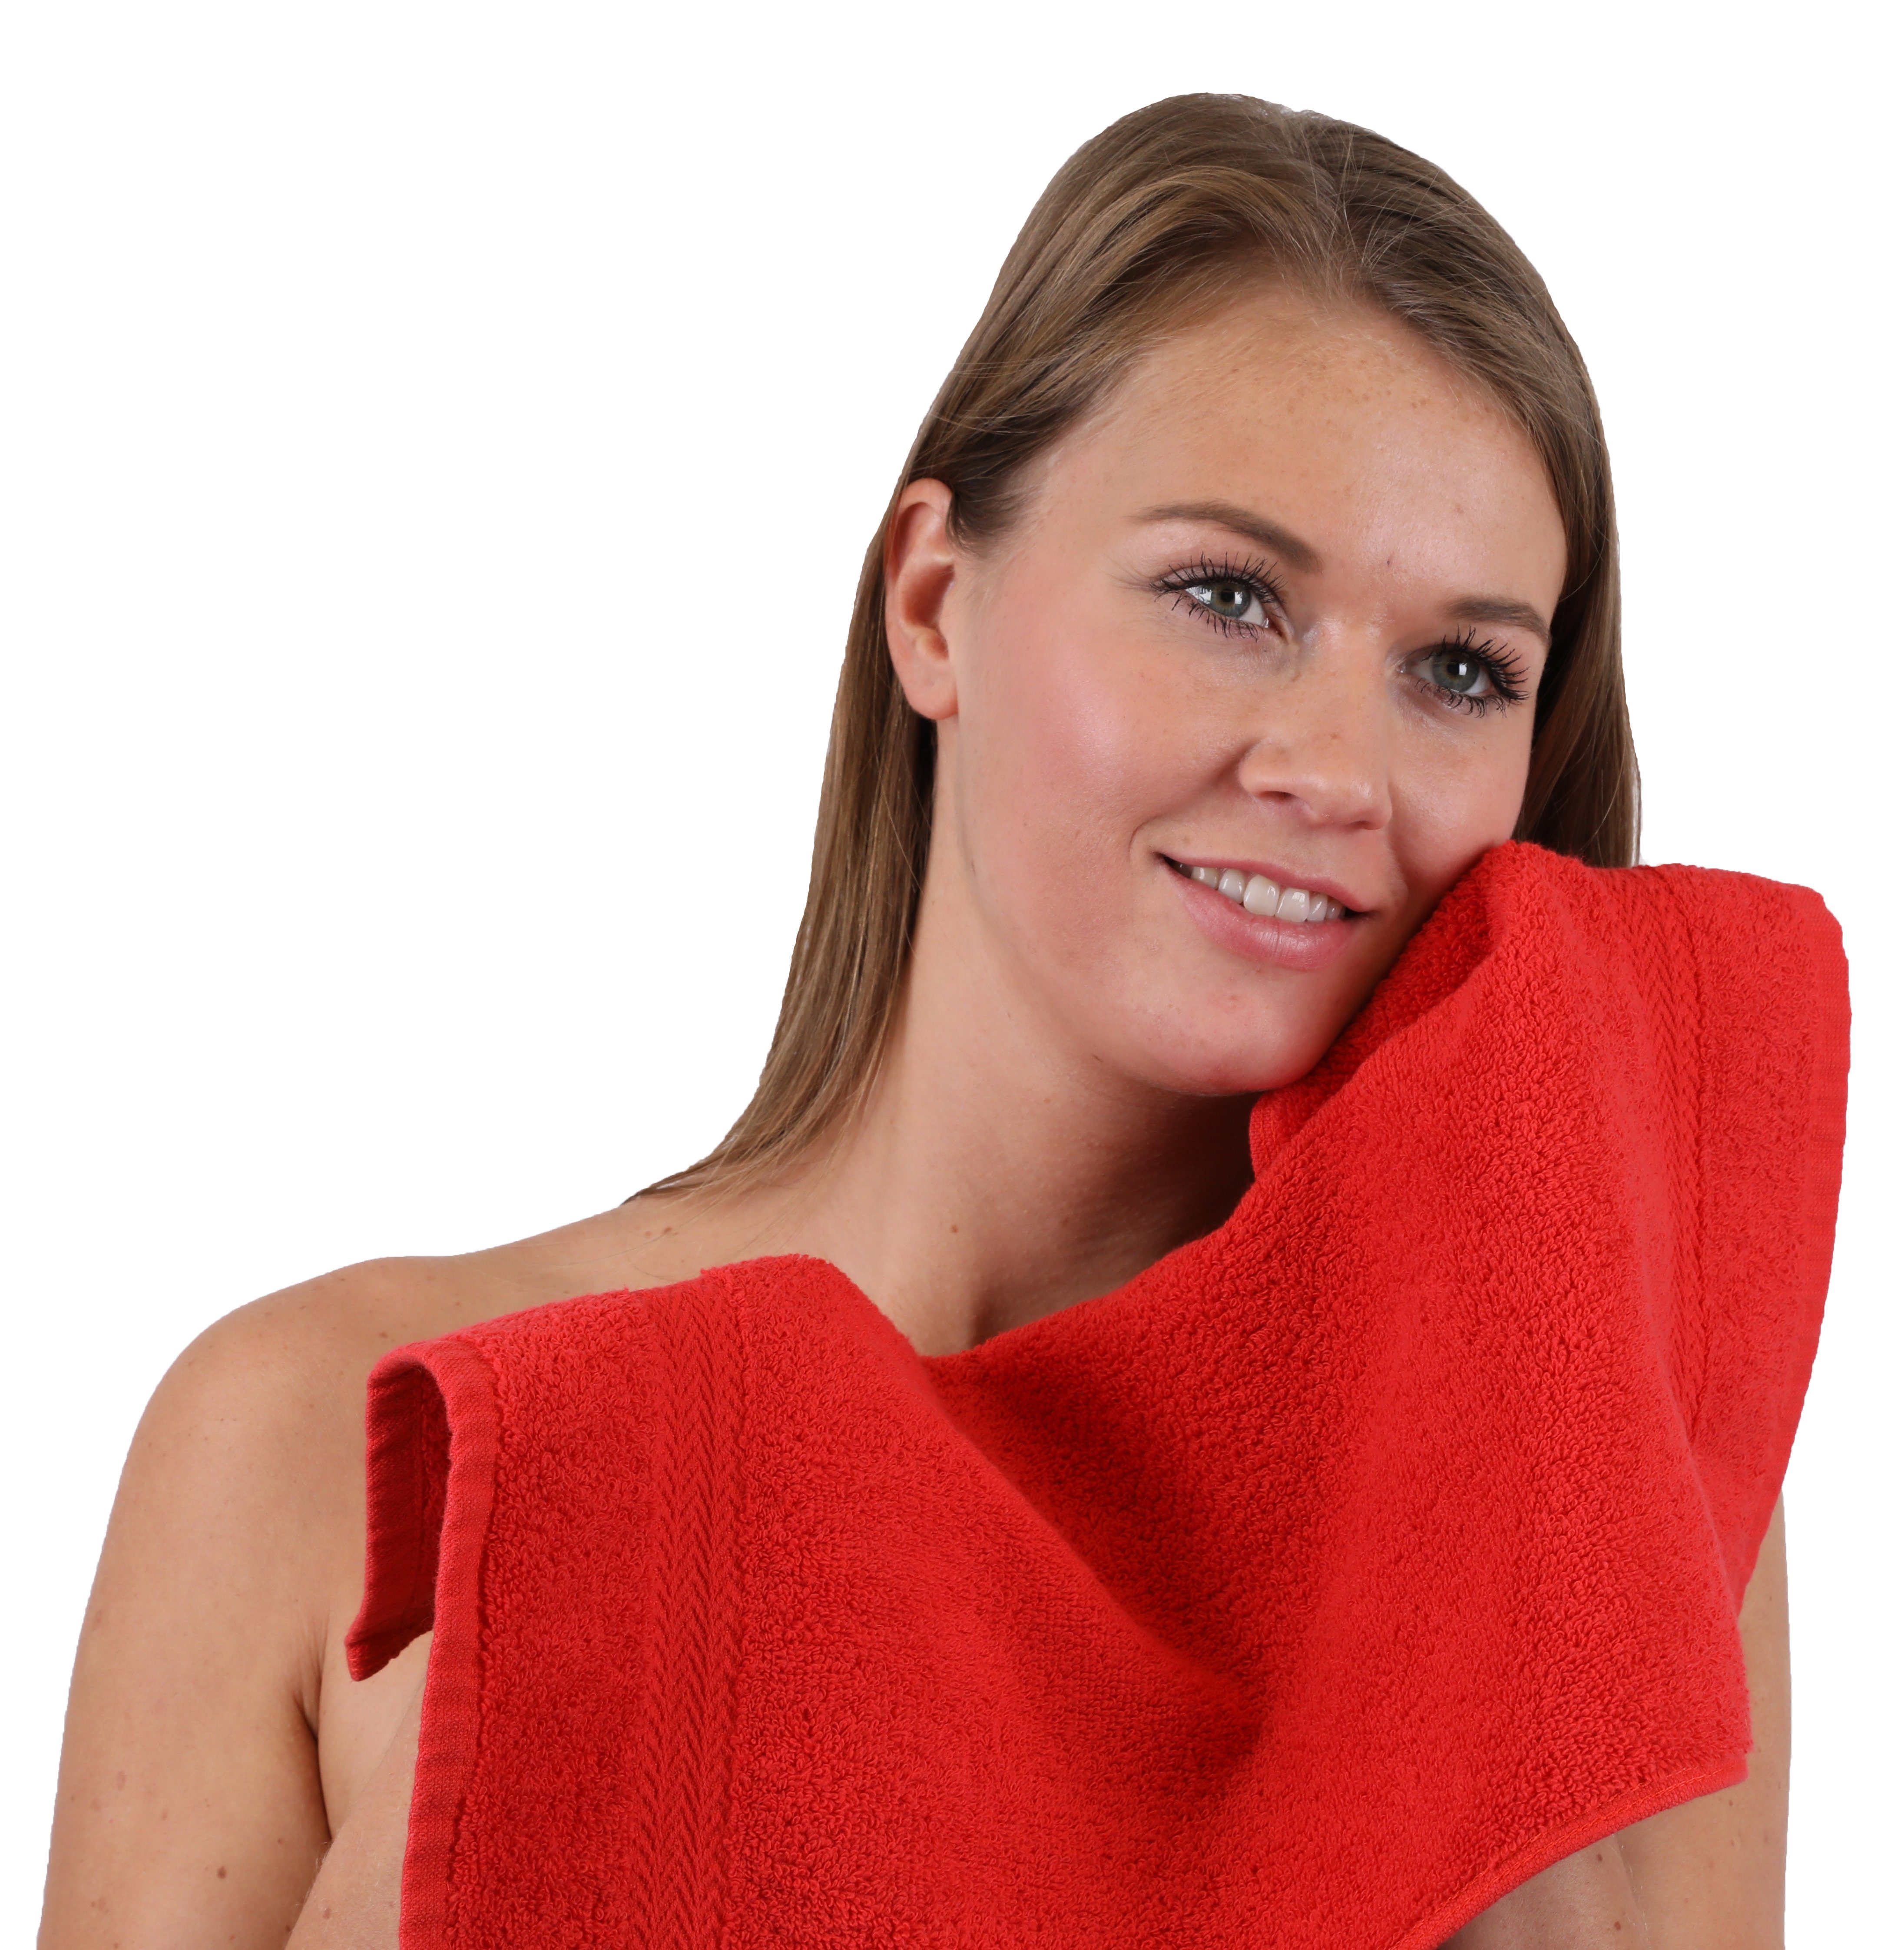 100% Handtuch Baumwolle, Betz PremiumFarbe & 10-TLG. Rot, 12-tlg) Dunkelbau (Set, Set Handtuch-Set